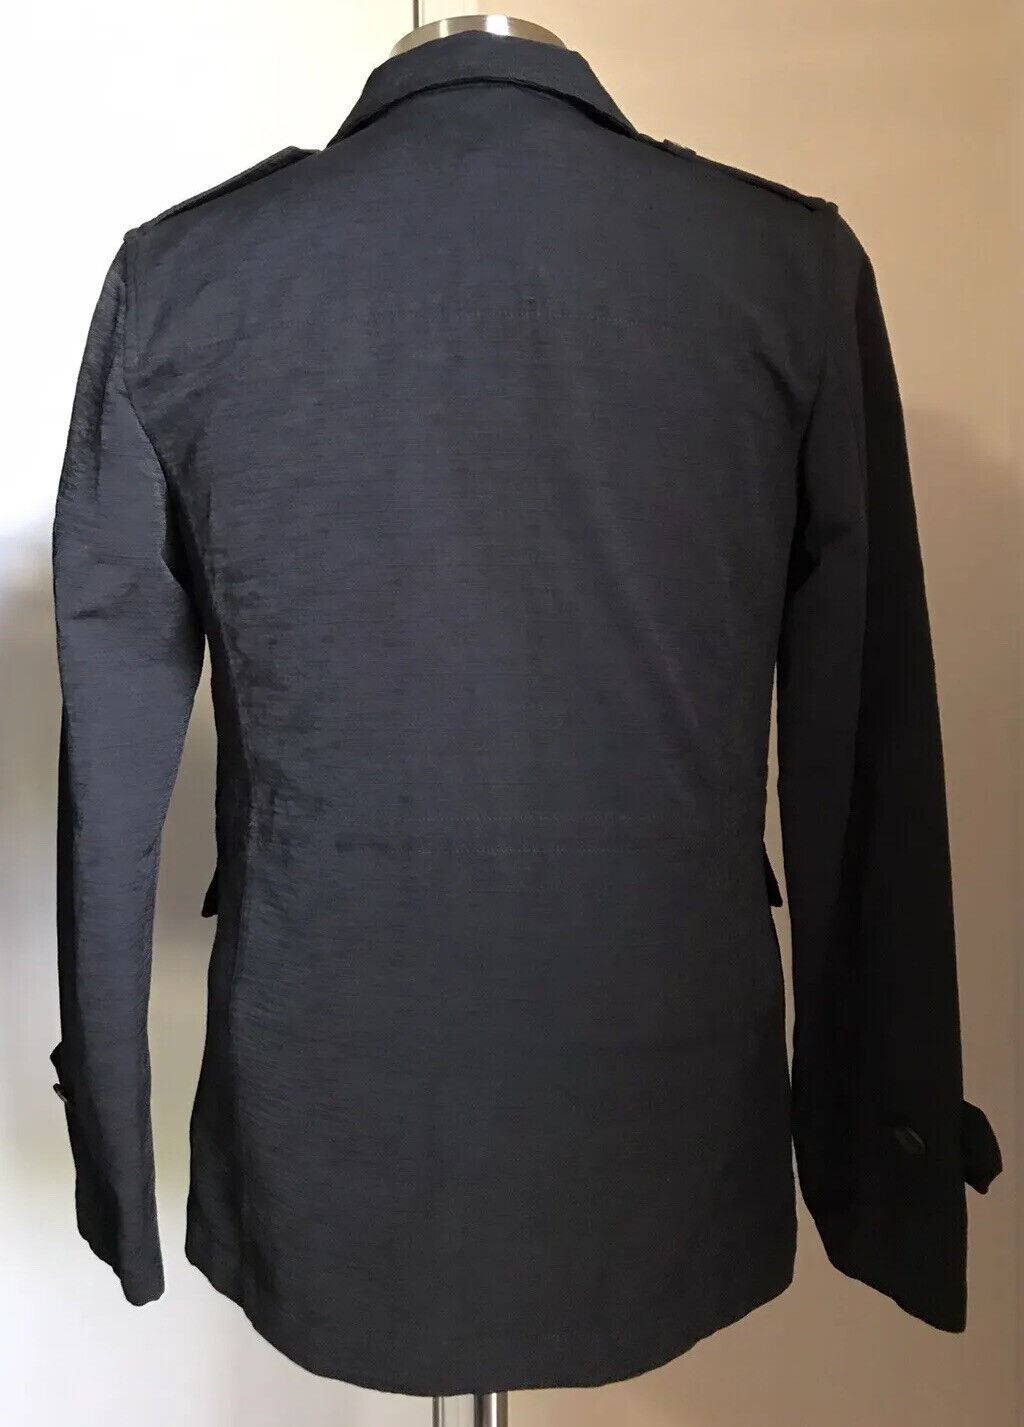 NWT $2195 Мужская стильная куртка-пальто Eidos черного цвета 38 США (48 Ei) Италия